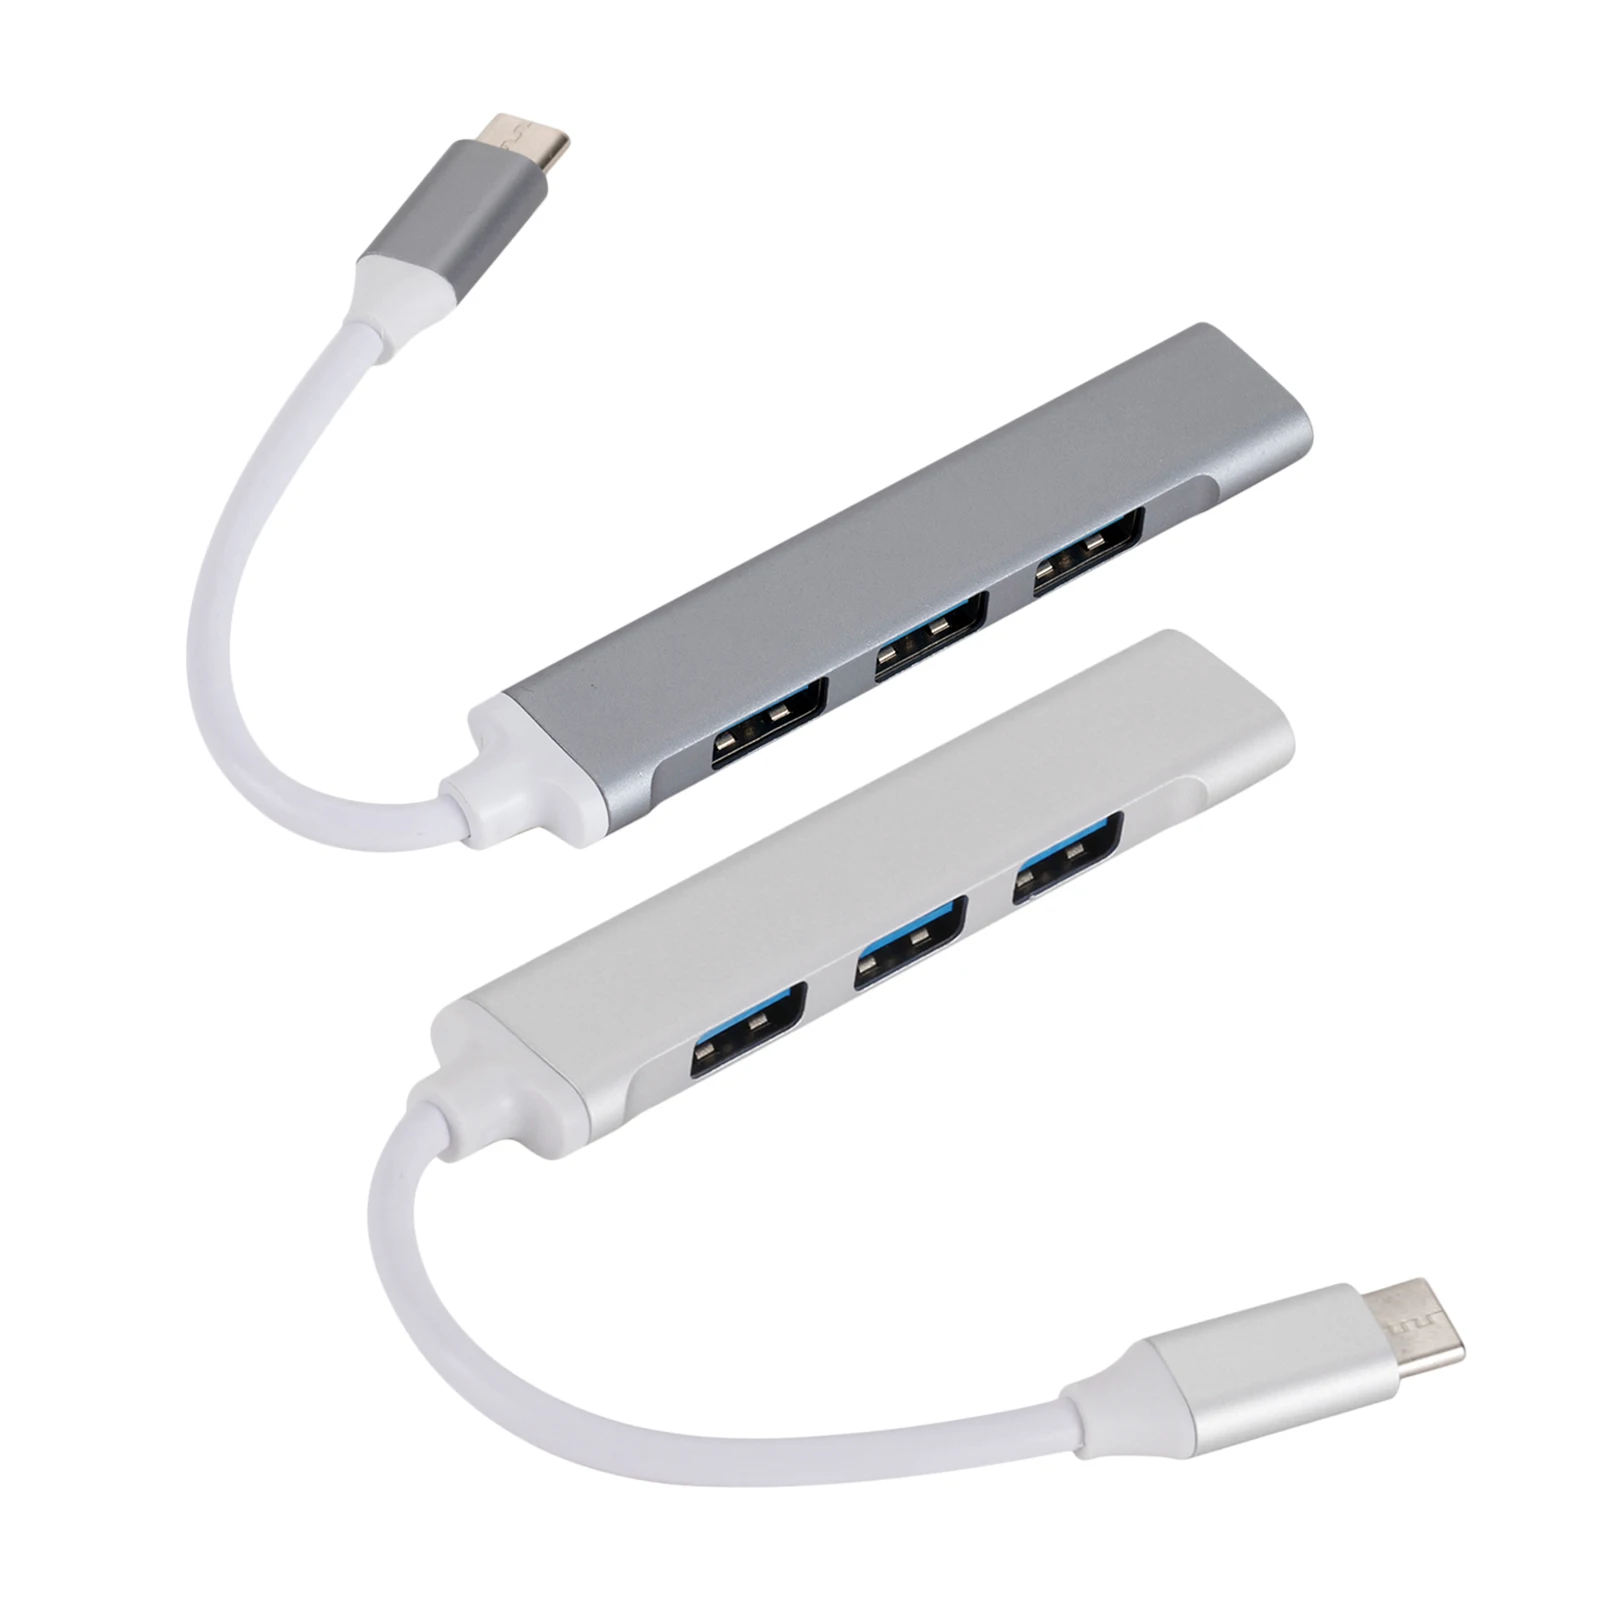 

Алюминий оболочки usb-хаб Тип C 3,0 4 Порты и разъёмы разветвитель адаптер OTG USB флэш накопитель для ноутбука Тетрадь, зарядка не Sup Порты и разъём...